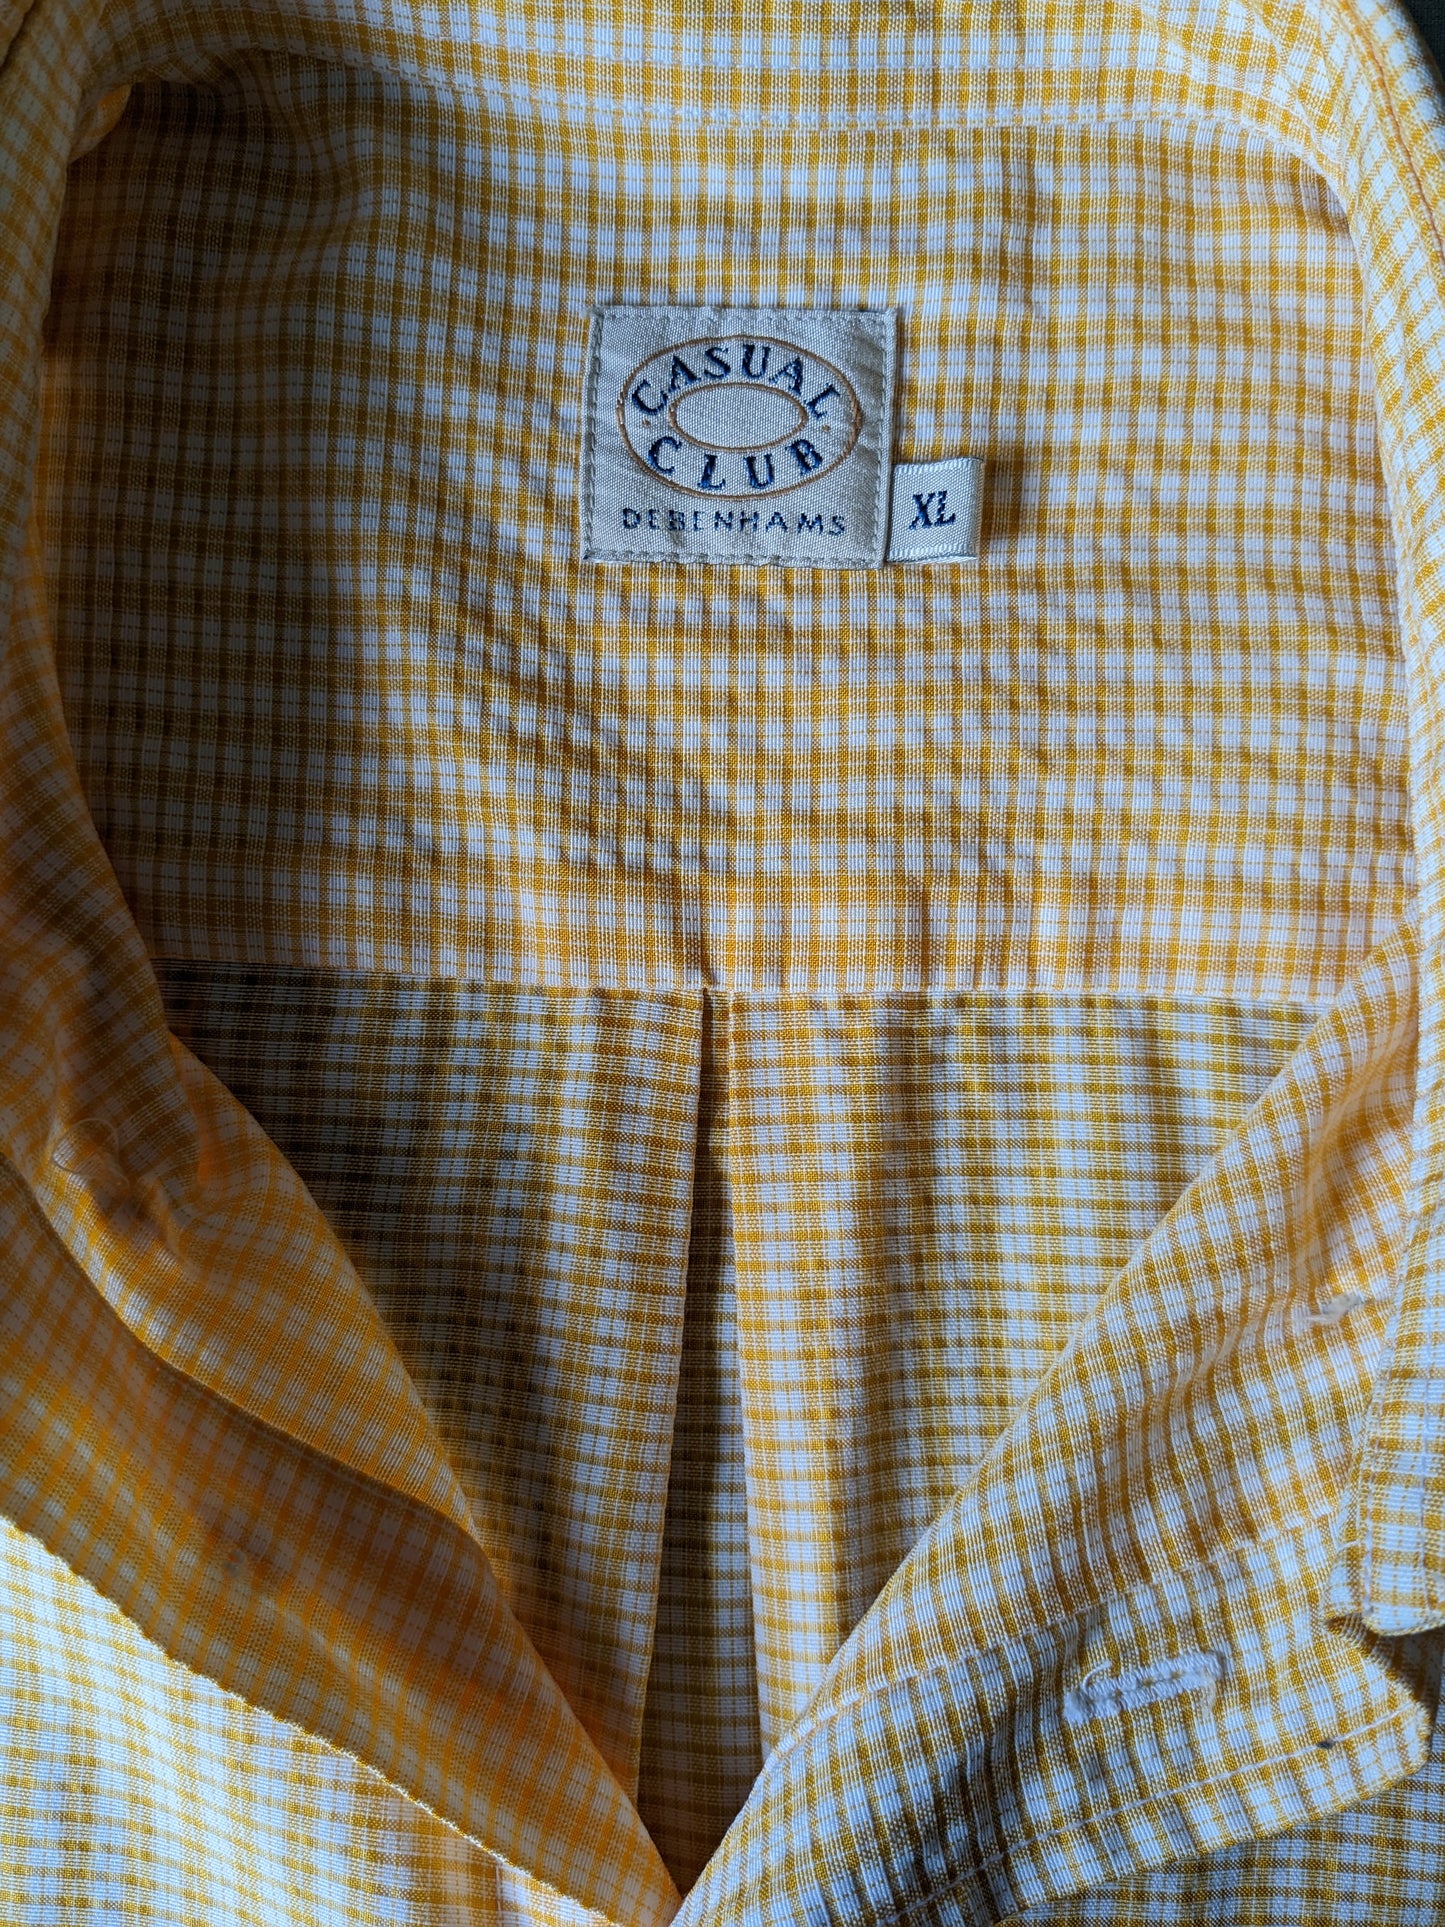 Shirt club casual vintage manica corta. Motivo beige arancione. Dimensione XL / XXL-2XL.